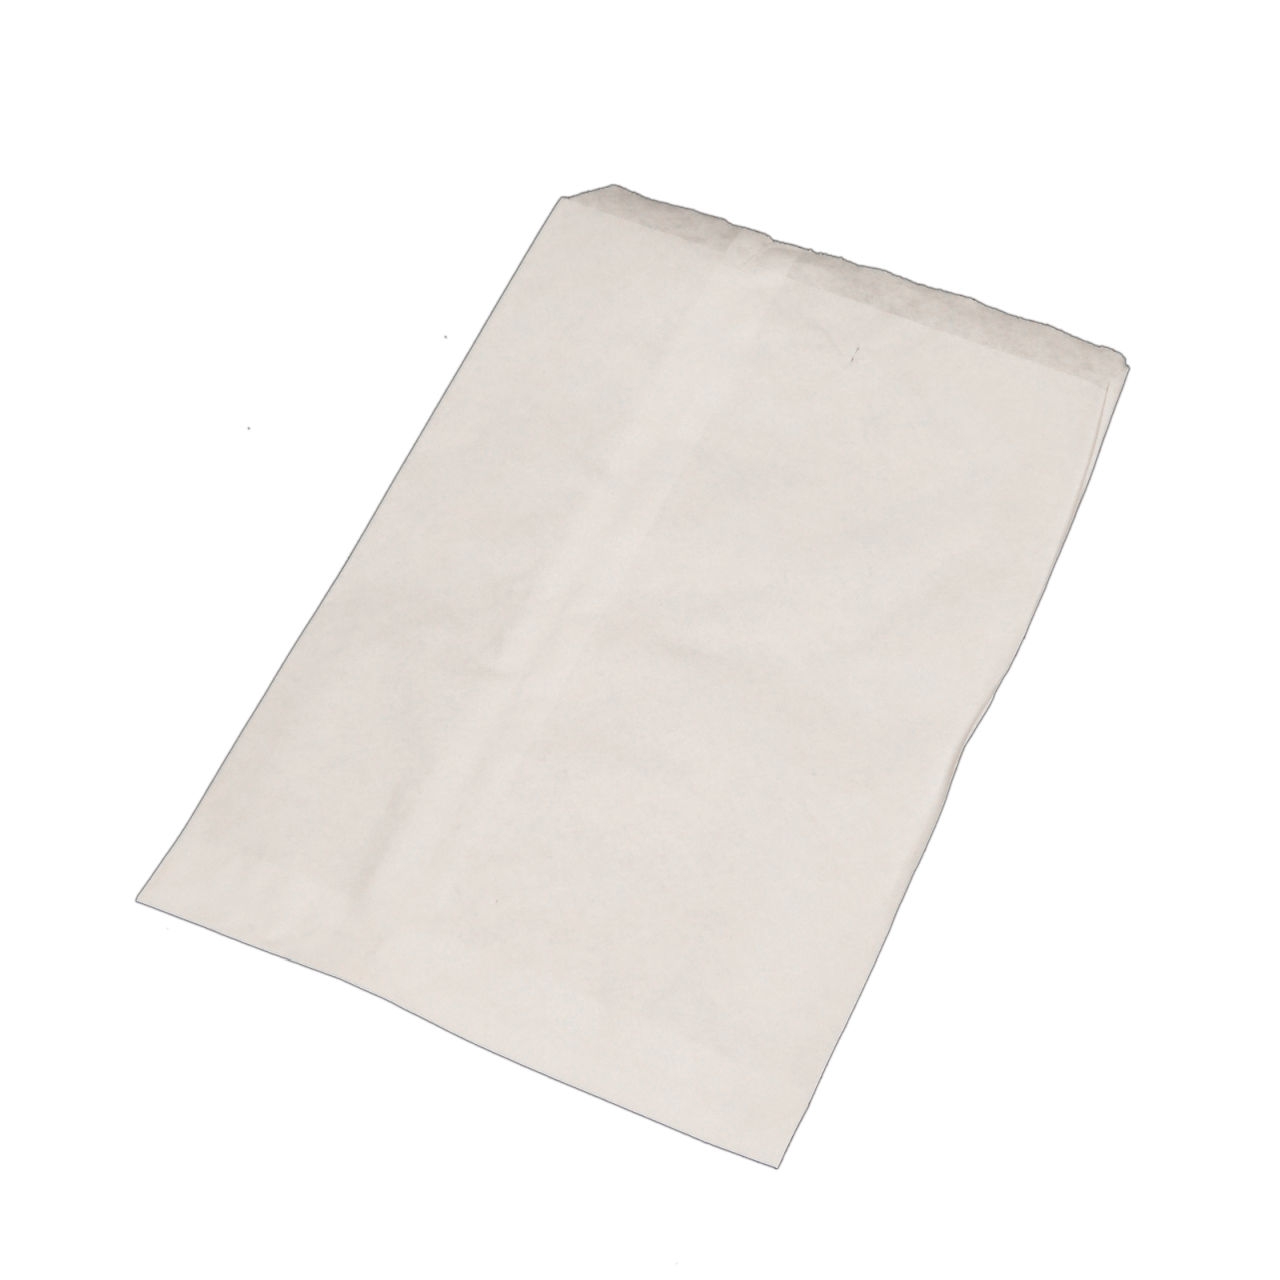 Flachbeutel, 13 x 20 cm, weiß Papier